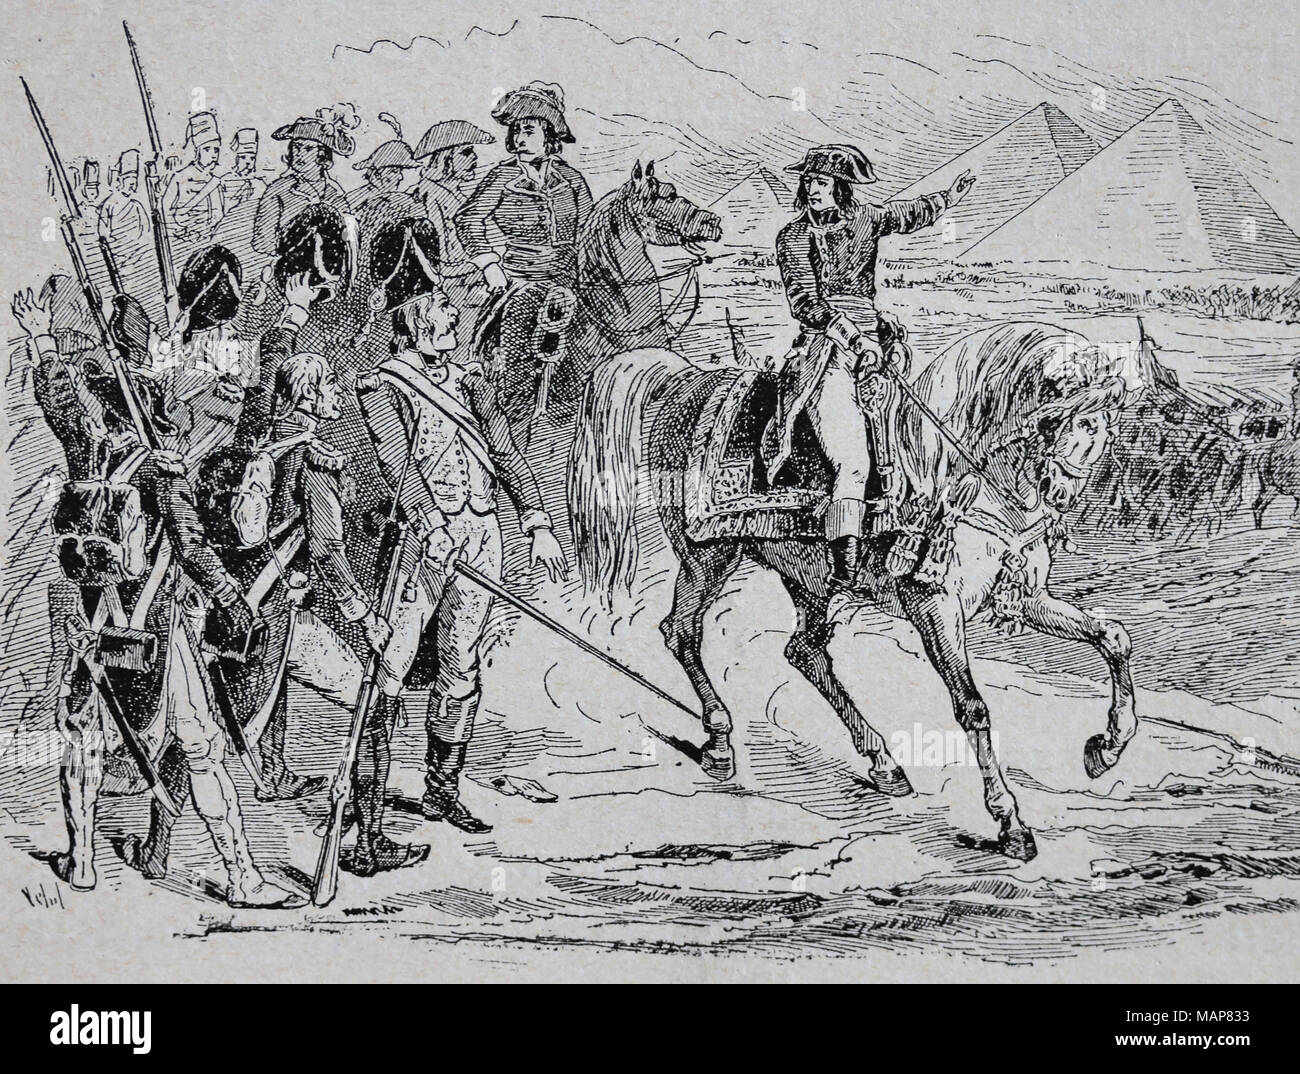 Schlacht bei den Pyramiden. Juli 21 ,1798 während der französischen Invasion in Ägypten. Französische Revolution Kriege. "Napoleon mit seinen Truppen. Stockfoto